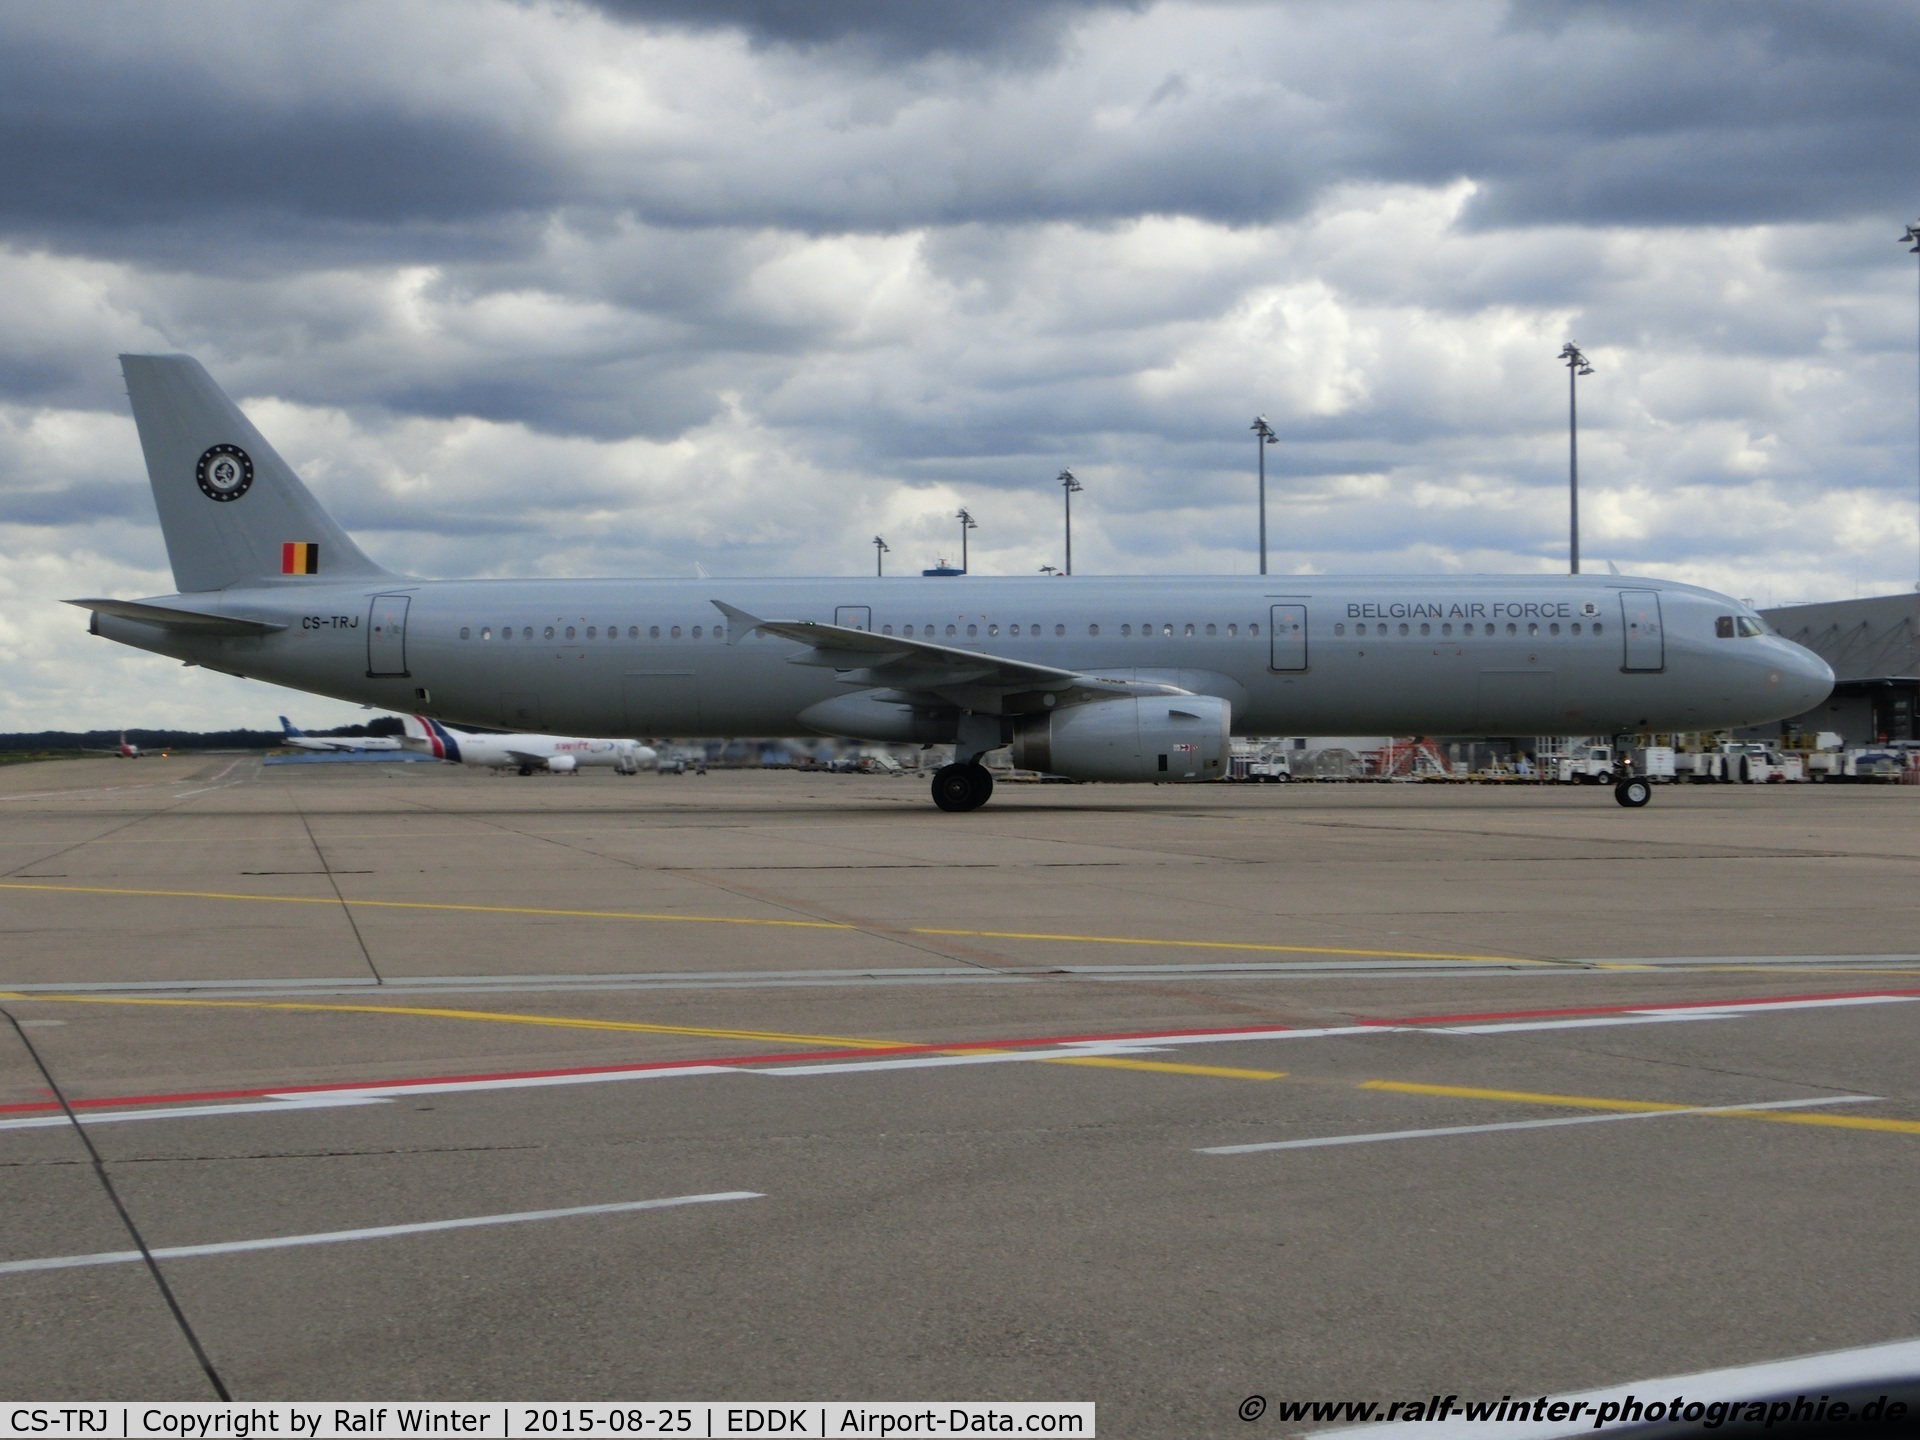 CS-TRJ, 1999 Airbus A321-231 C/N 1004, Airbus A321-231 - 5K HFY Hi Fly op. Belgian Air Force - 1004 - CS-TRJ - 25.08.2015 - CGN